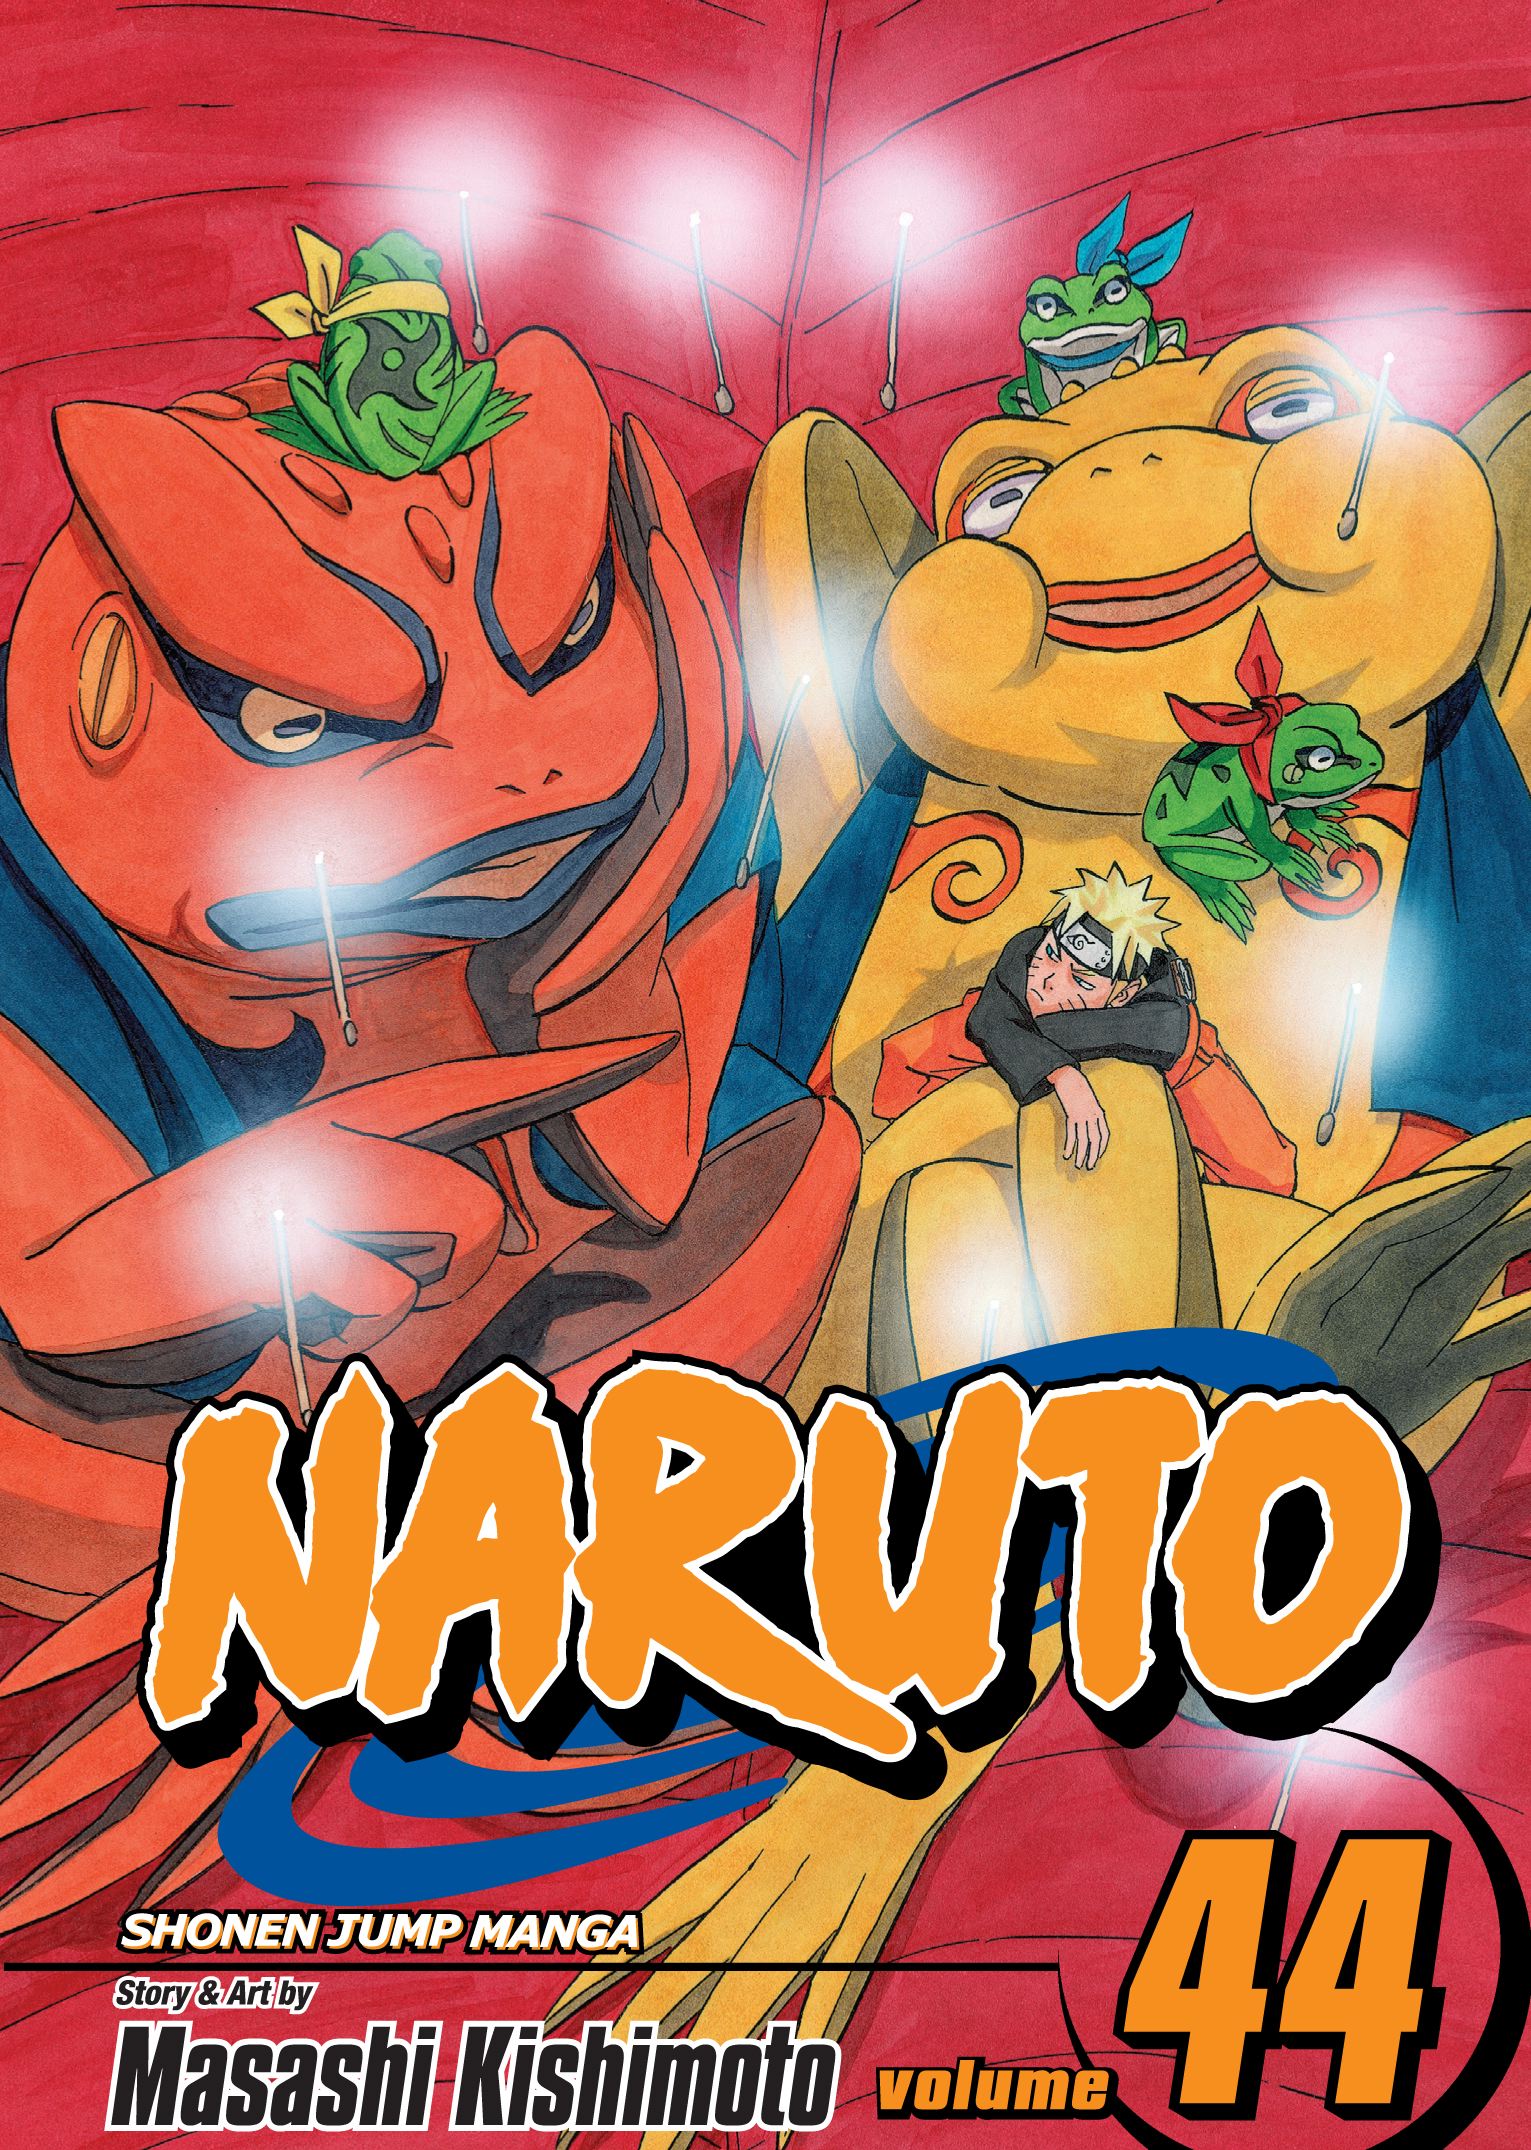 Naruto Vol. 44 | Kishimoto, Masashi (Auteur)